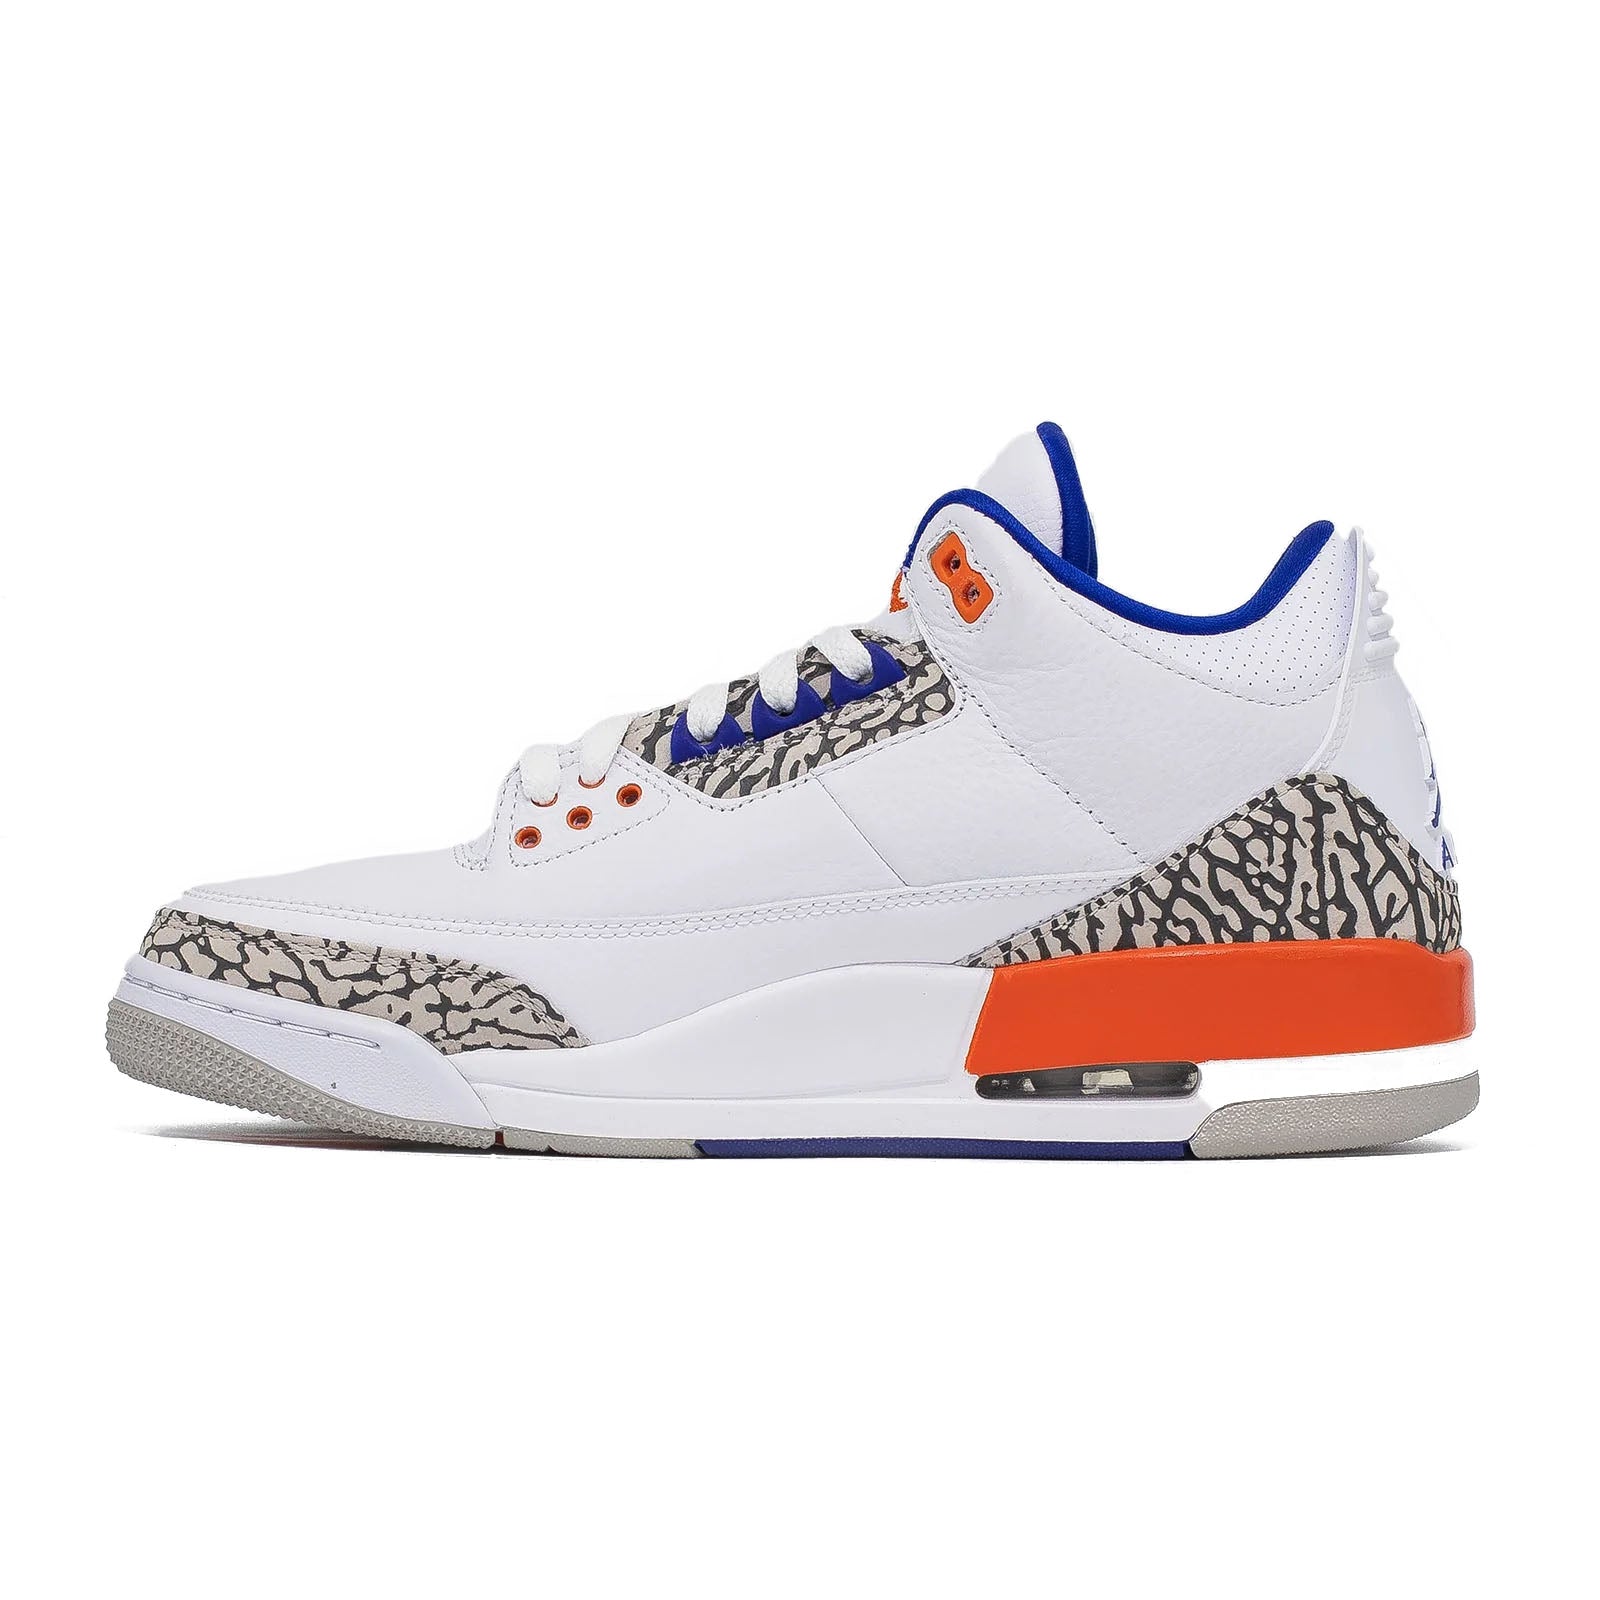 Air Jordan 3, Knicks